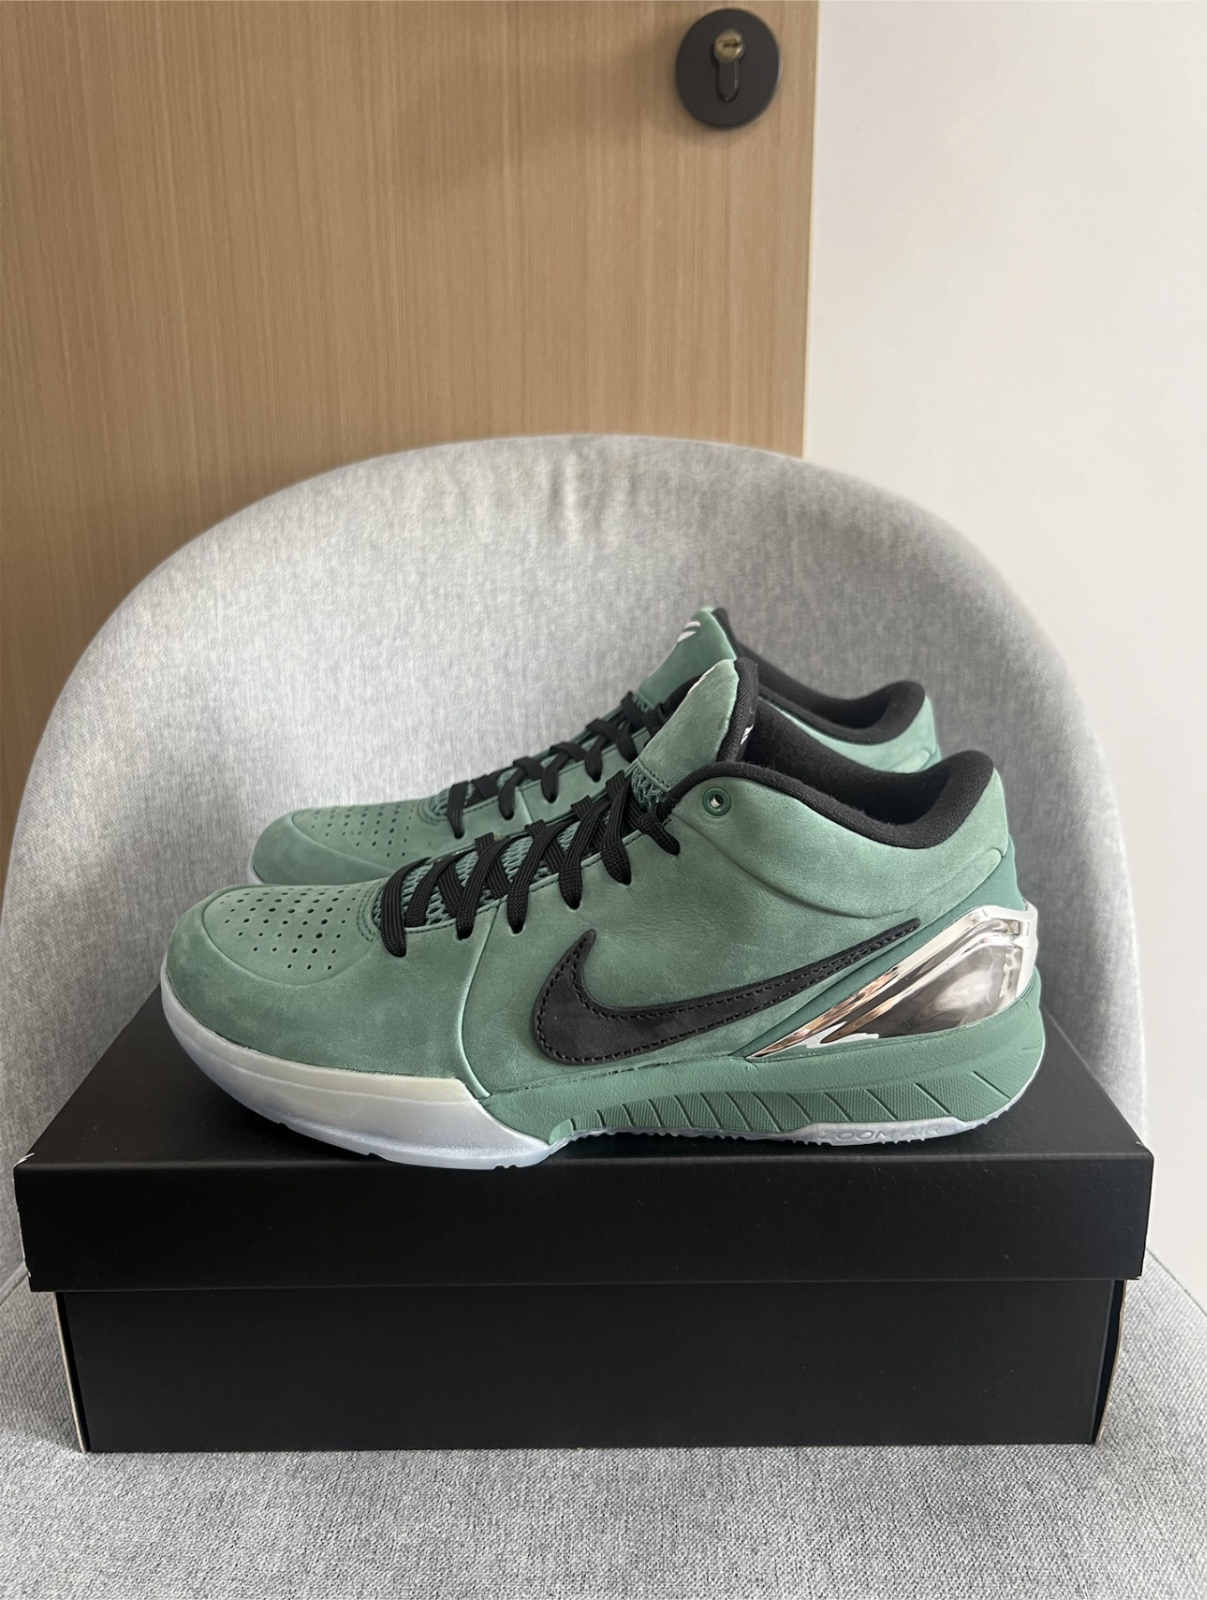 新品 Nike Kobe 4 Protro コービー4 プロトロ